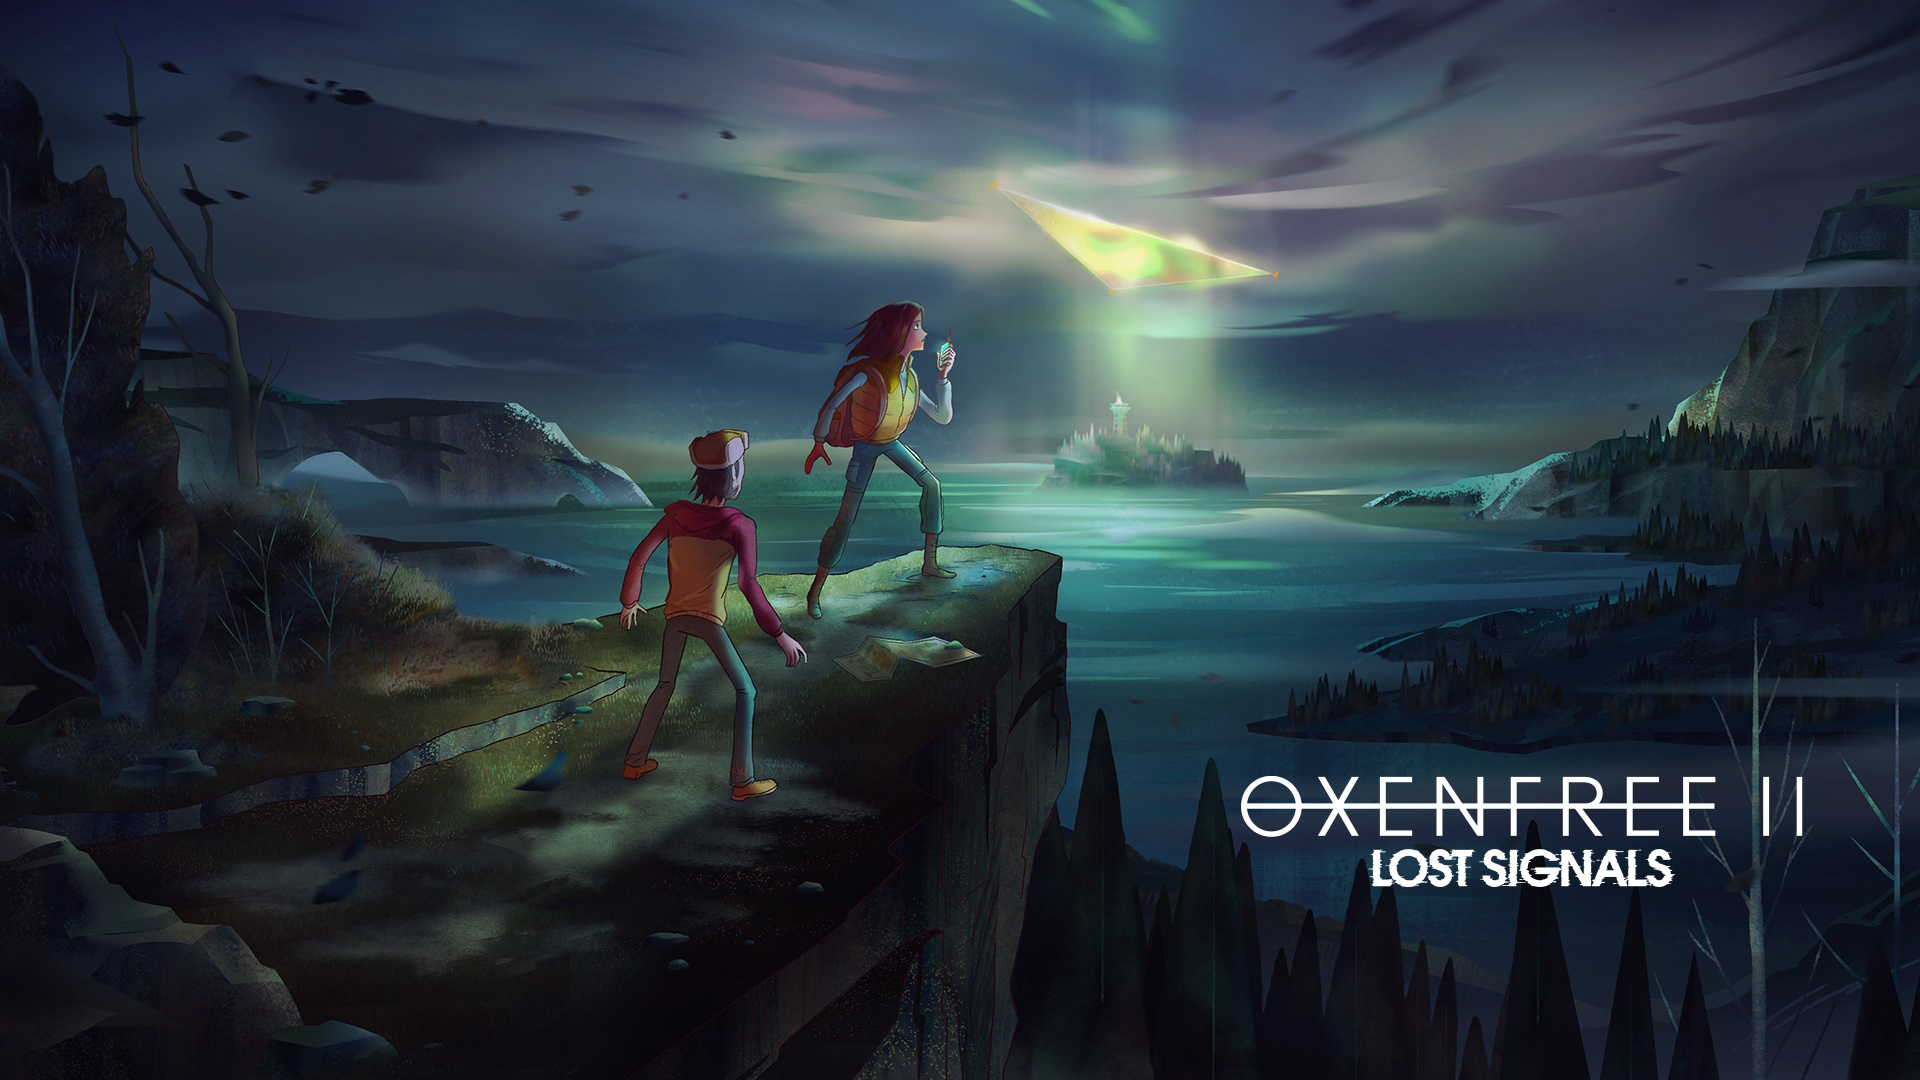 Das Hauptmotiv von Oxenfree 2 zeigt die Protagonisten Riley und Jacob auf einer Klippe mit Blick auf Edwards Island und einem Portal darüber